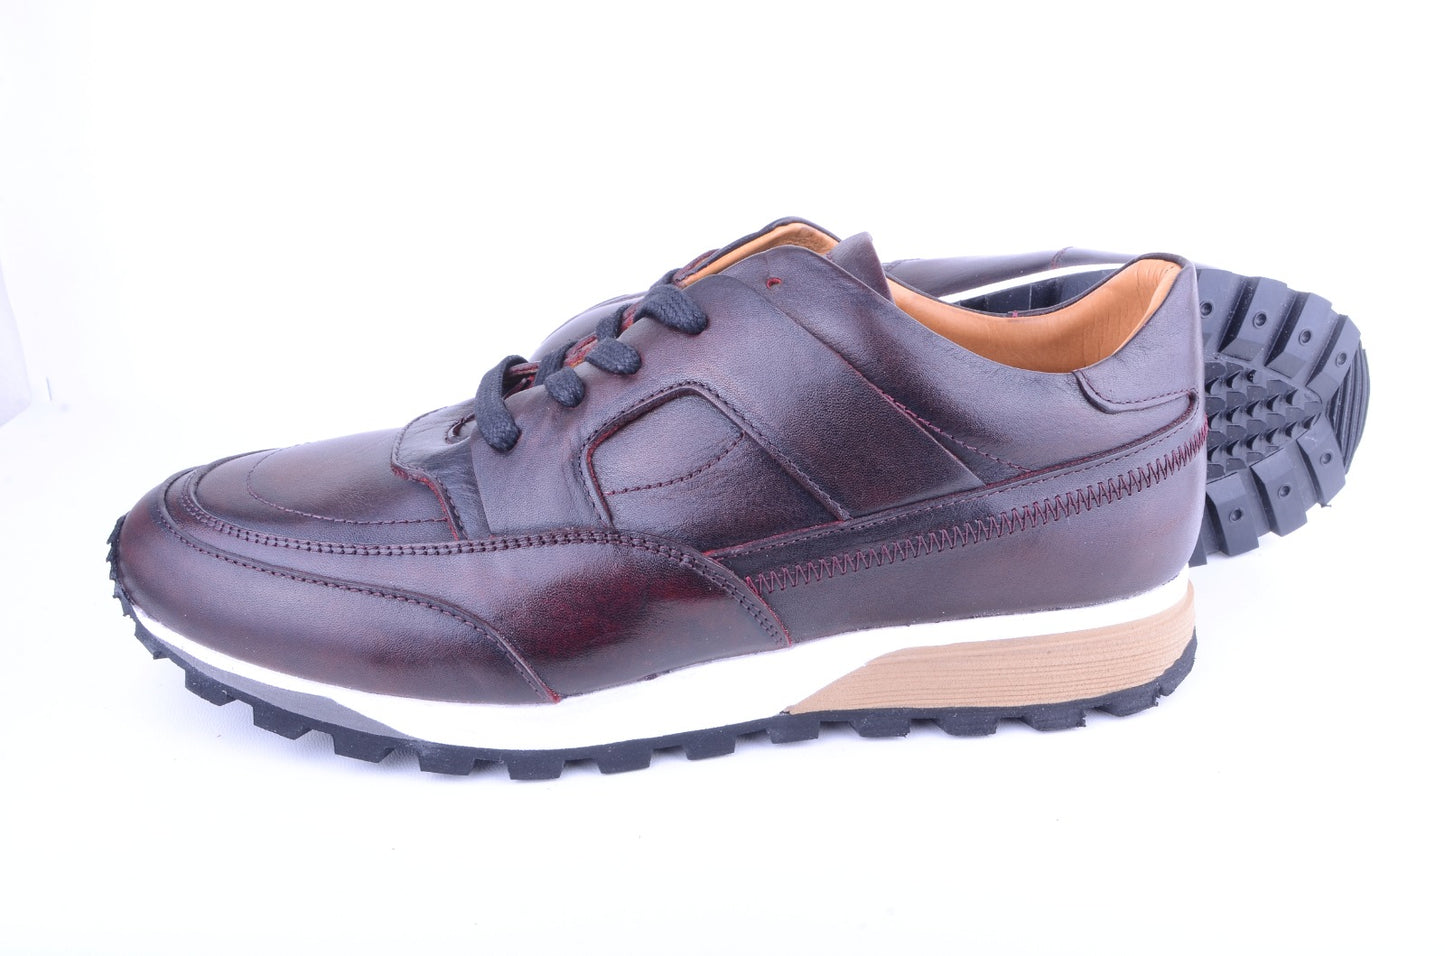 Pelle Line - 5752 Leather sneaker- Burgundy